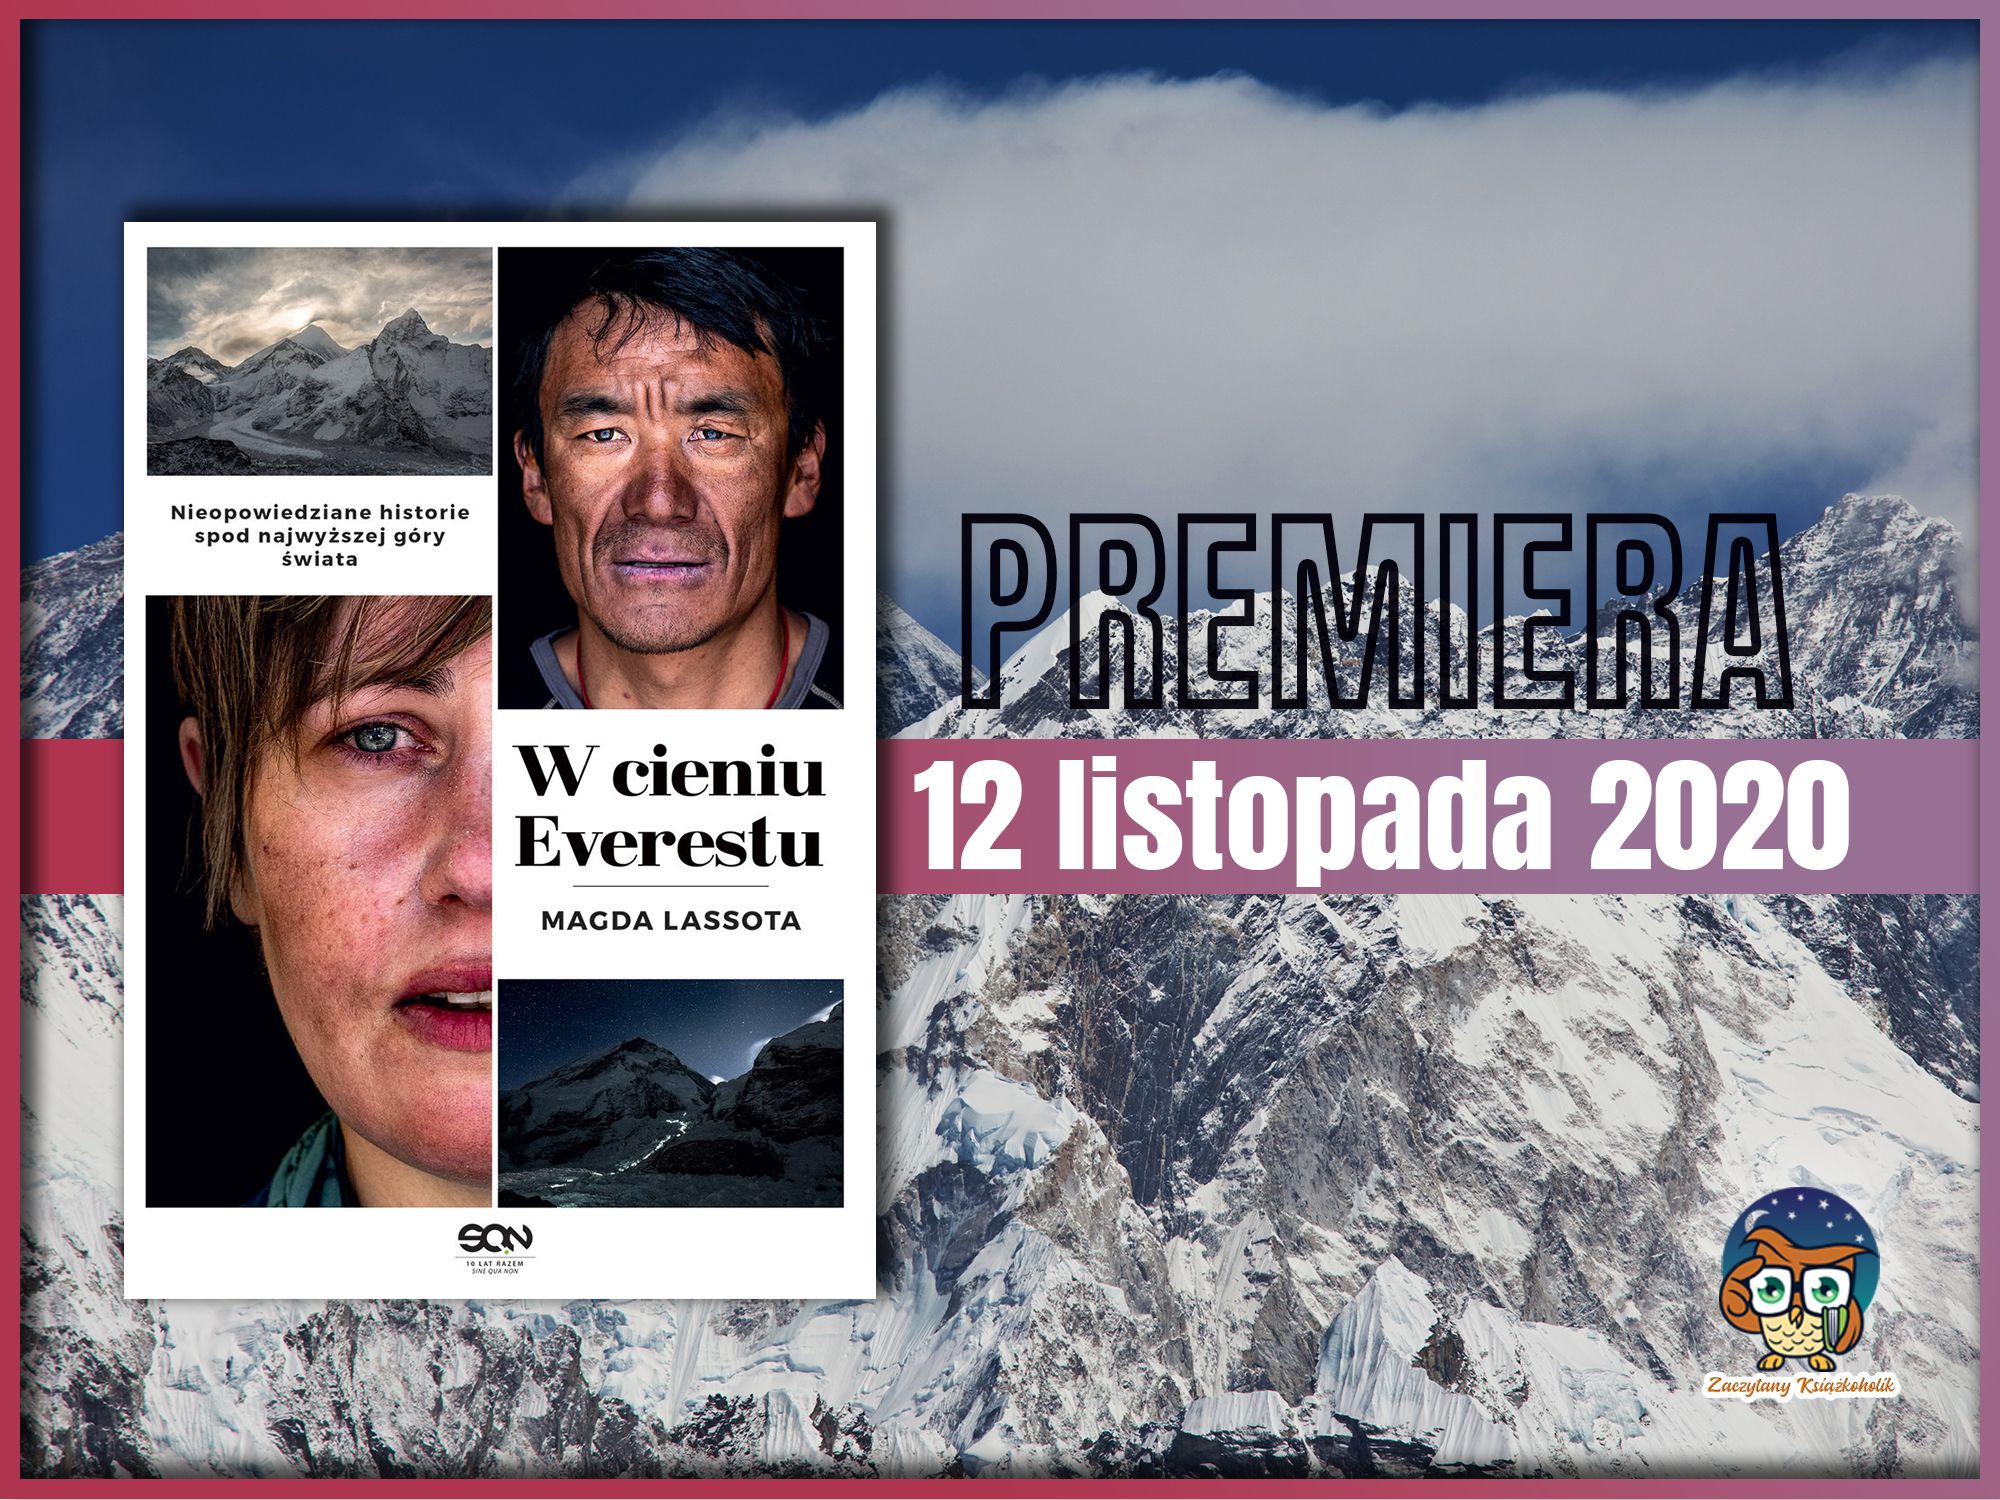 W cieniu Everestu, Magda lasota, zaczytanyksiazkoholik.pl